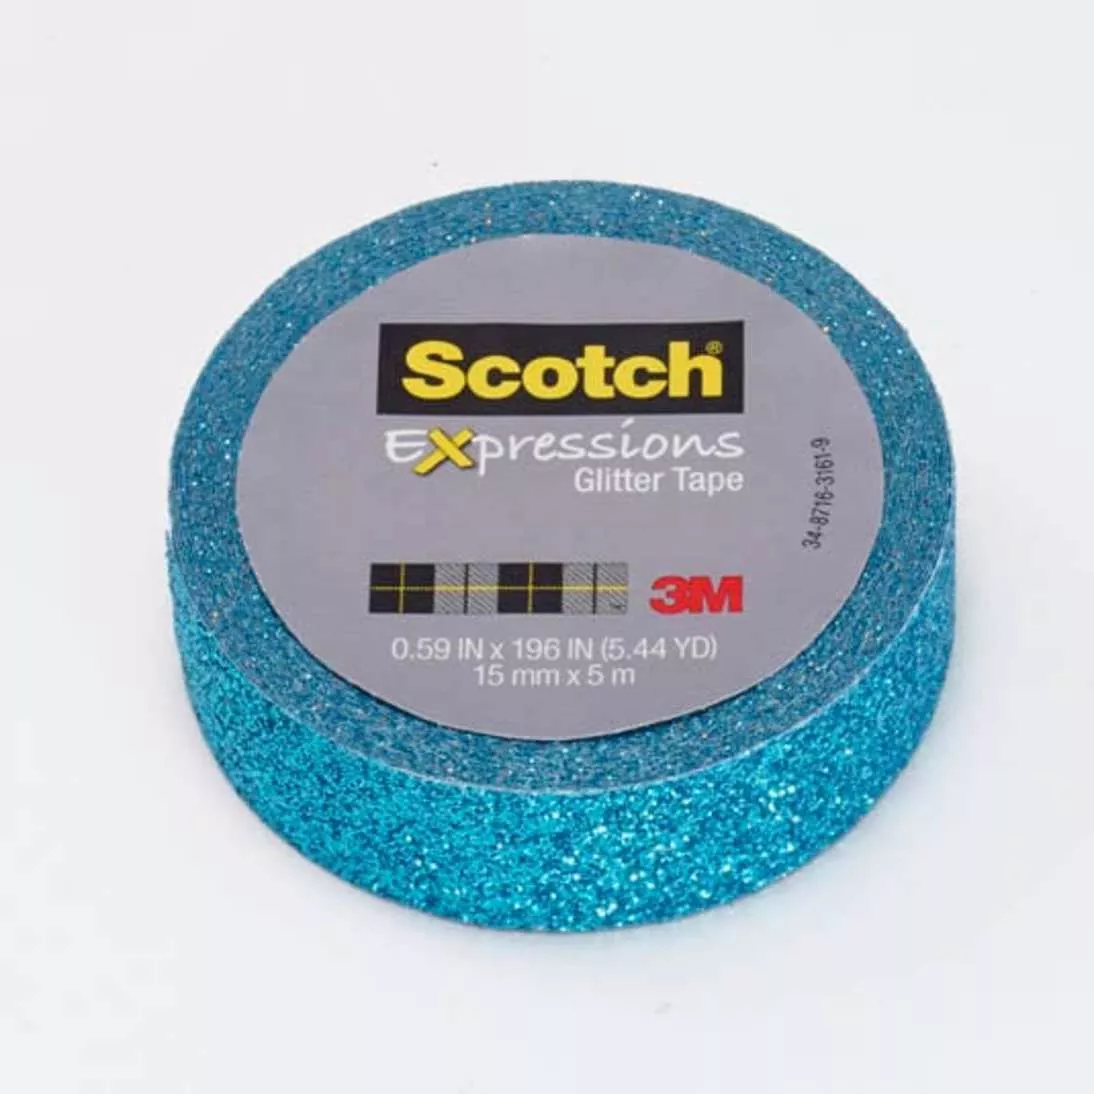 Scotch® Expressions Glitter Tape C514-BLU, .59 in x 196 in (15 mm x 5 m)
Teal Blue Glitter